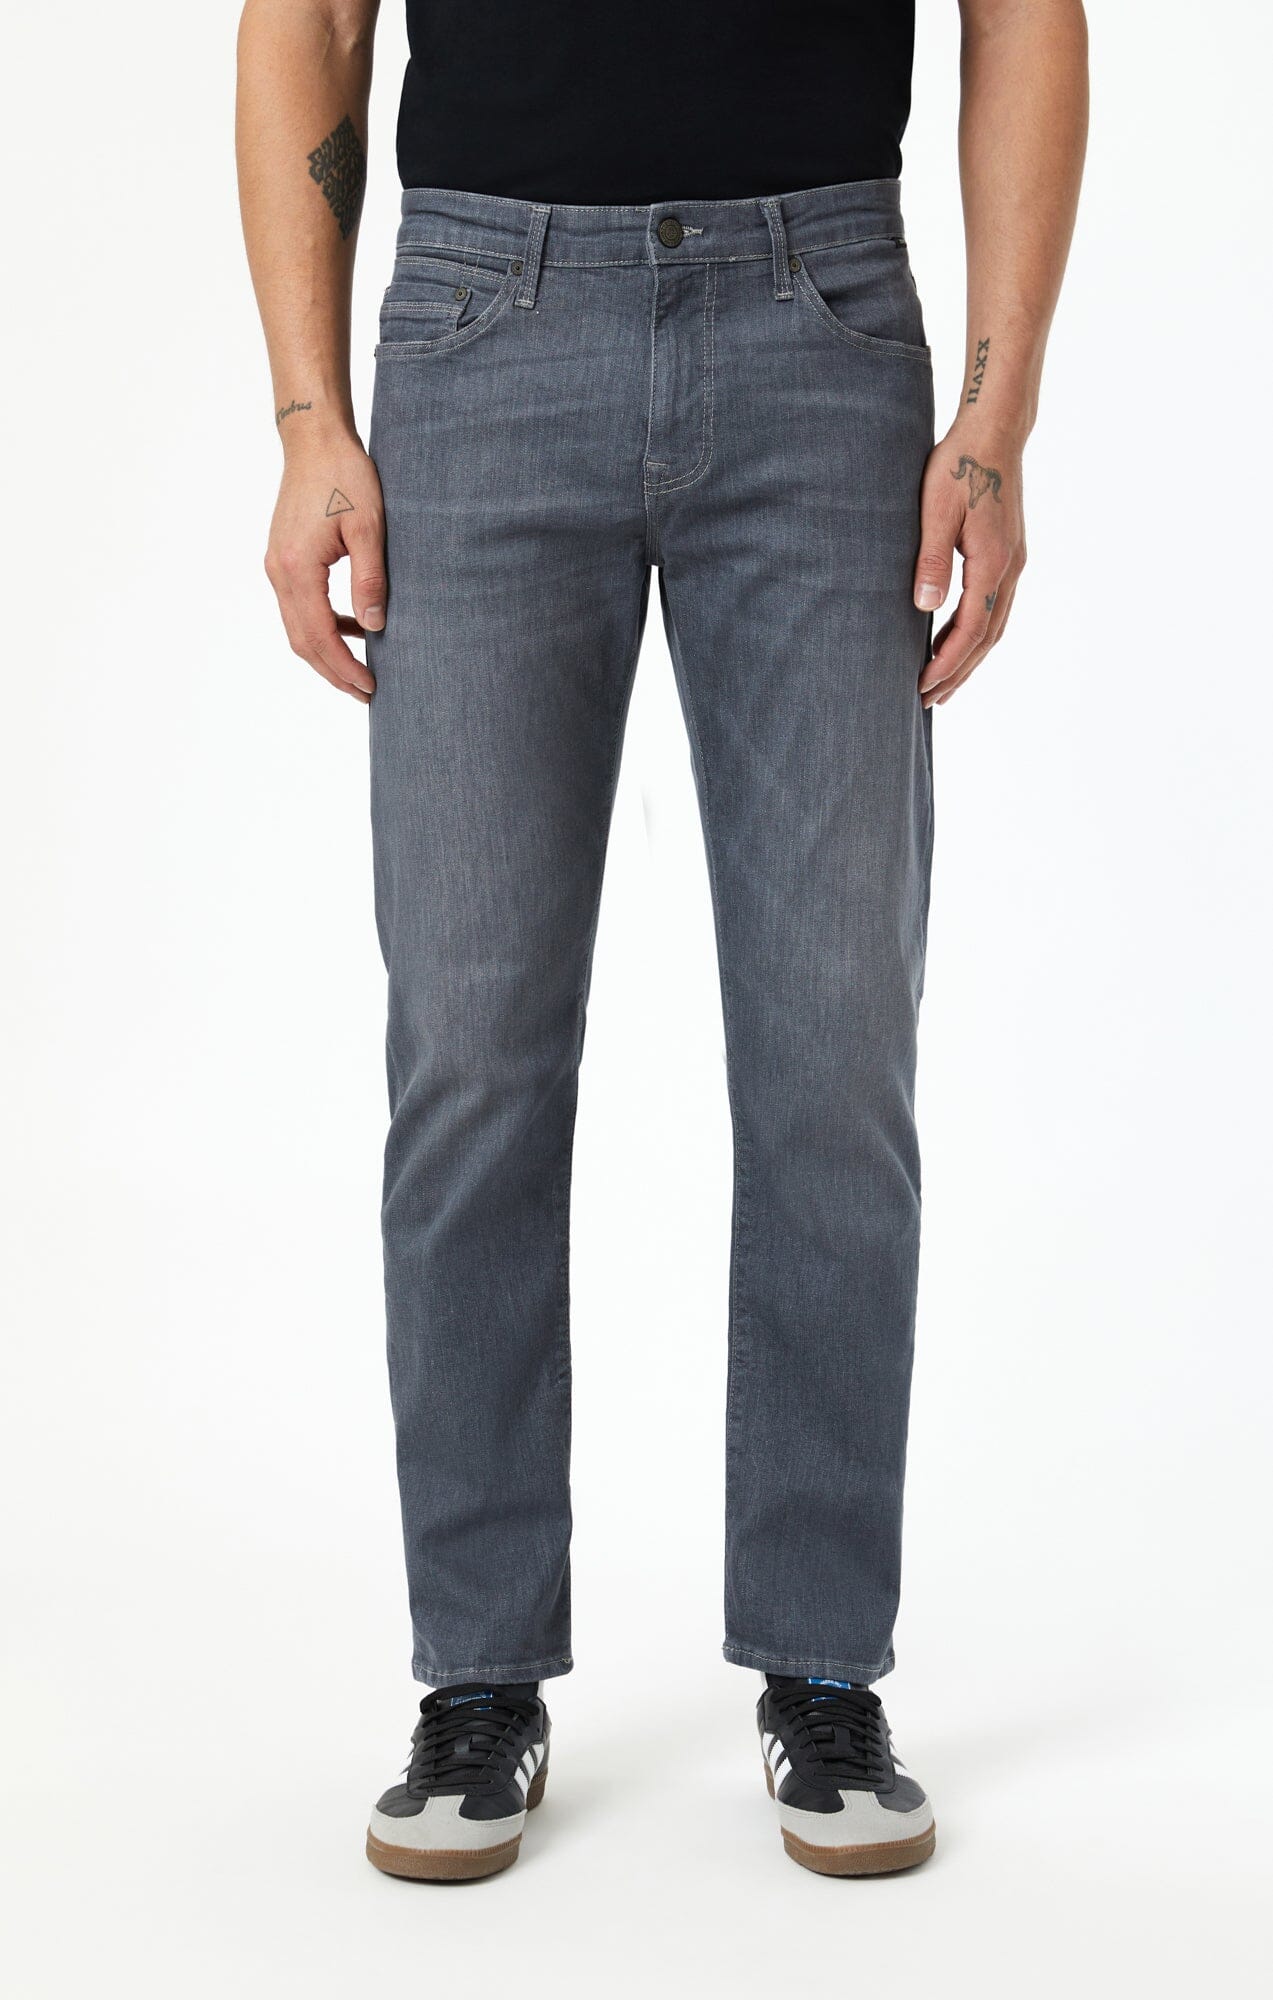 Grey Jeans for Men